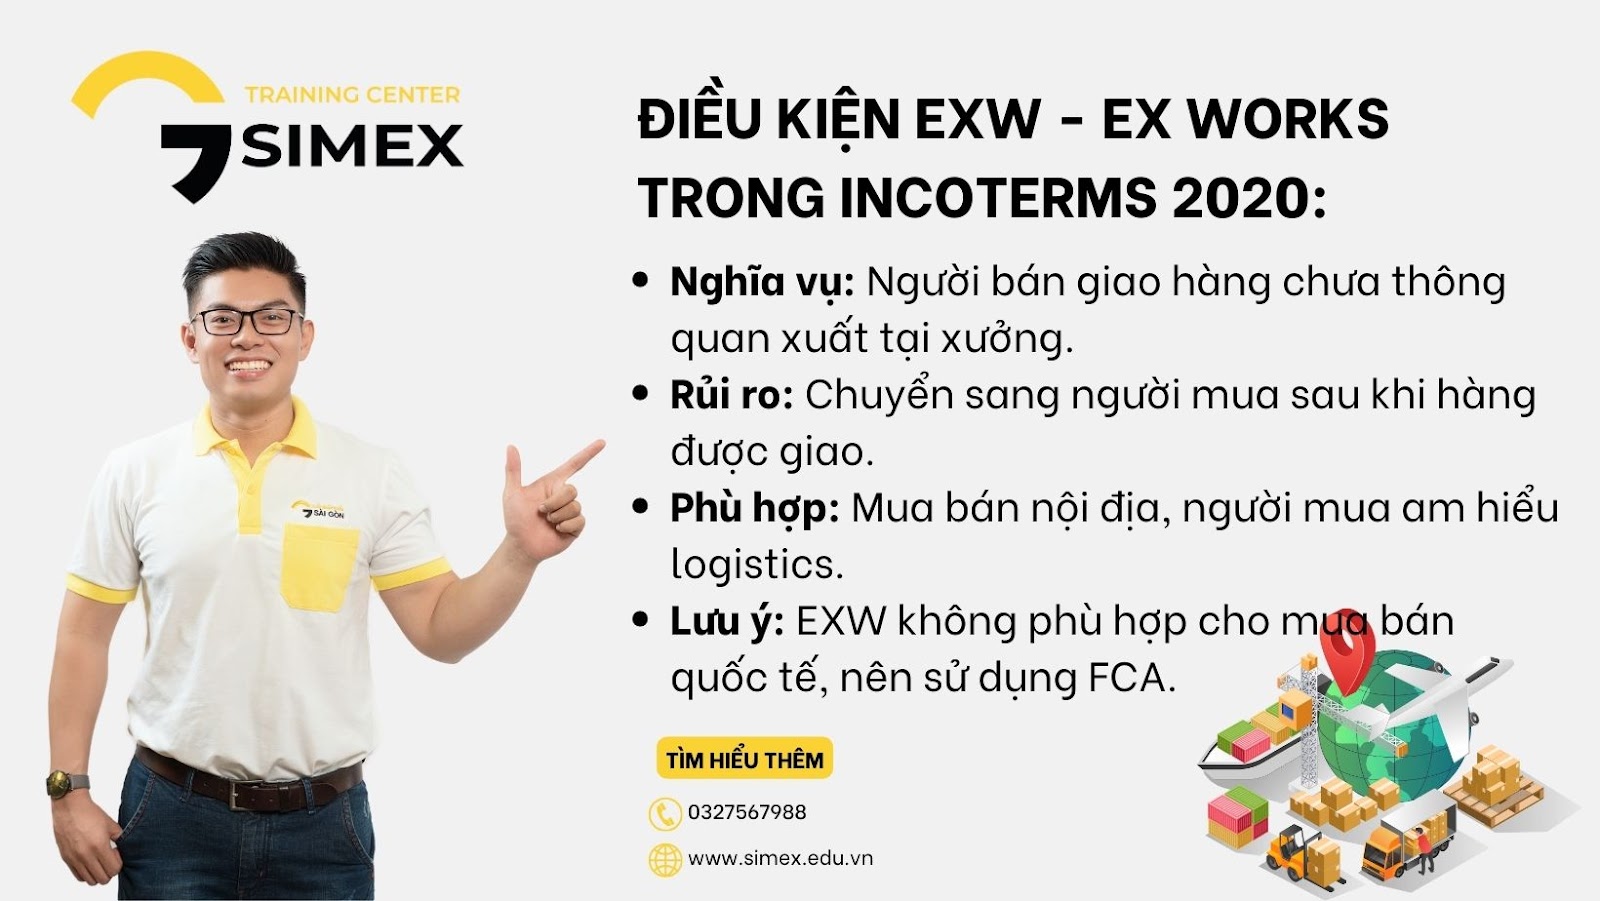 Tóm tắt nội dung điều kiện EXW - Ex Works trong Incoterms 2020